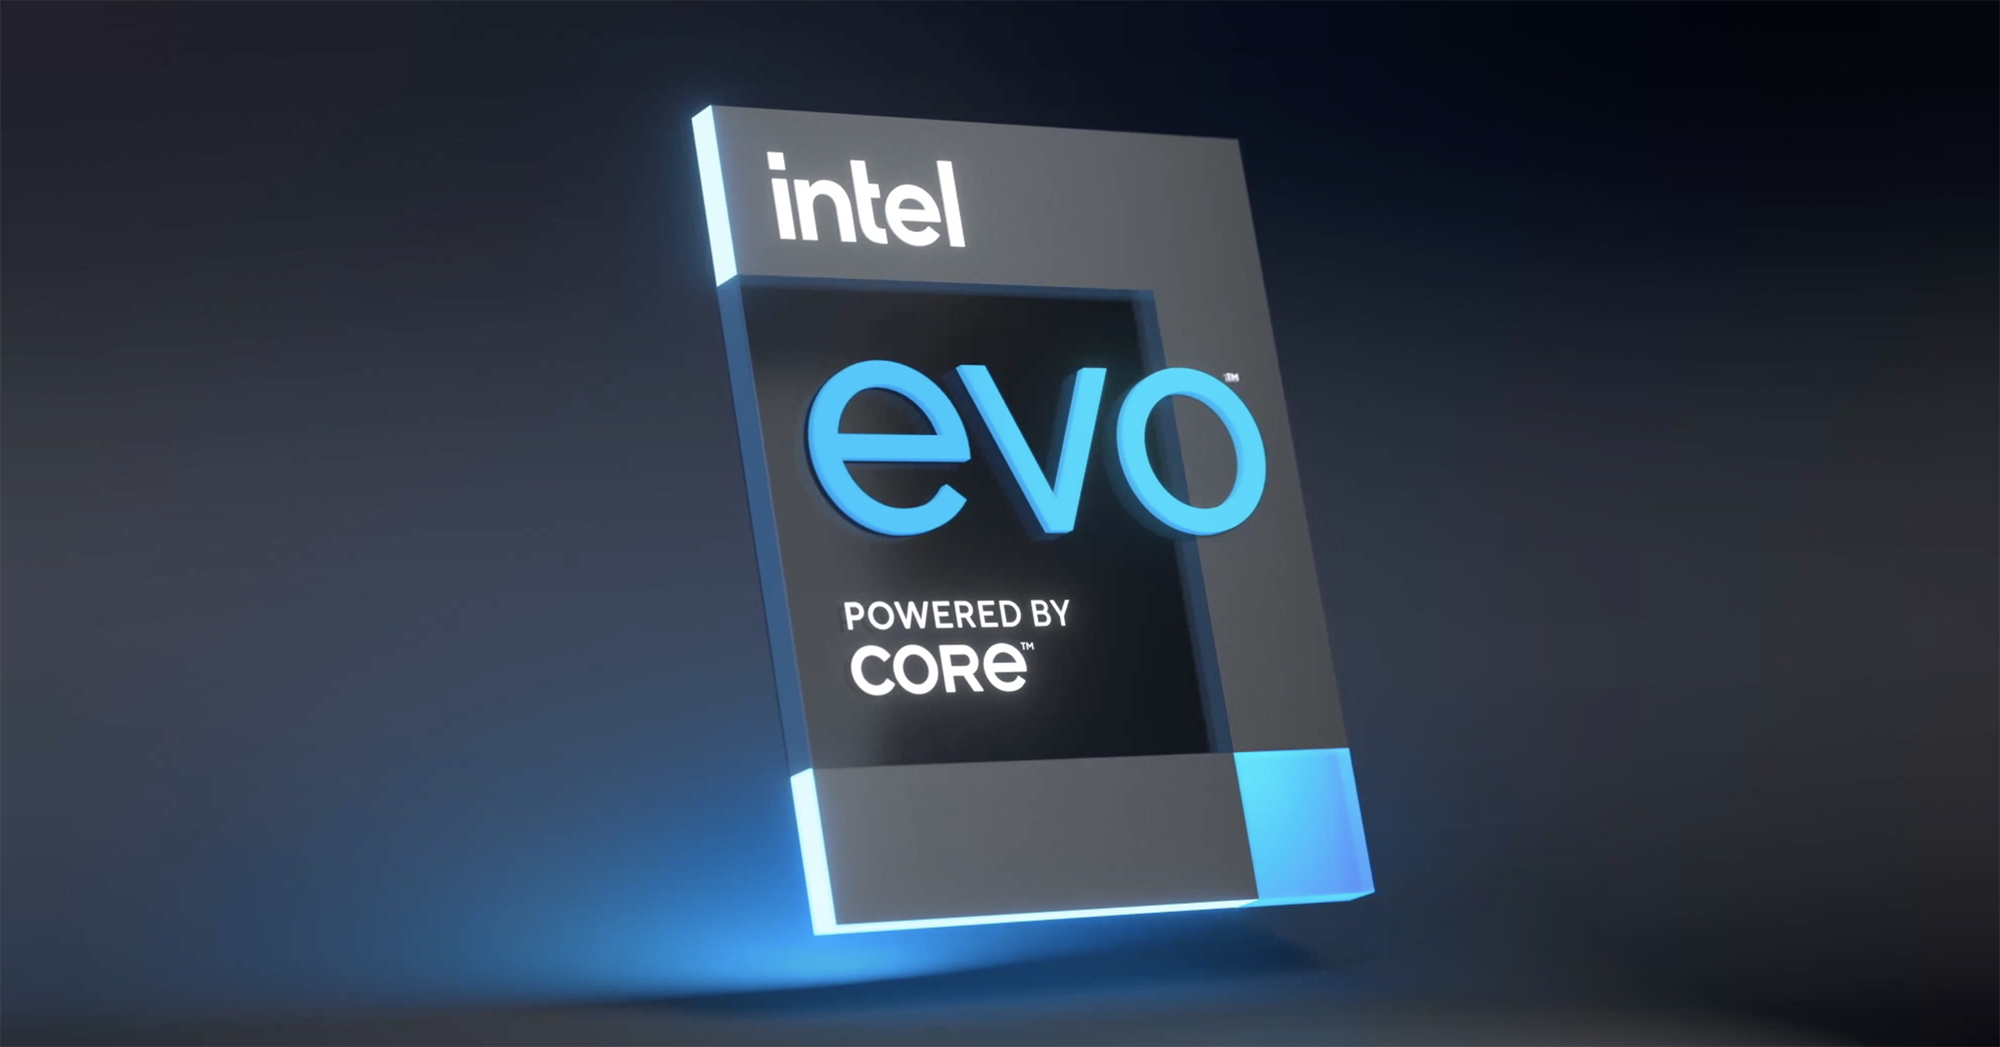 Giới thiệu các máy tính xách tay chạy trên nền Intel® Evo™ mới